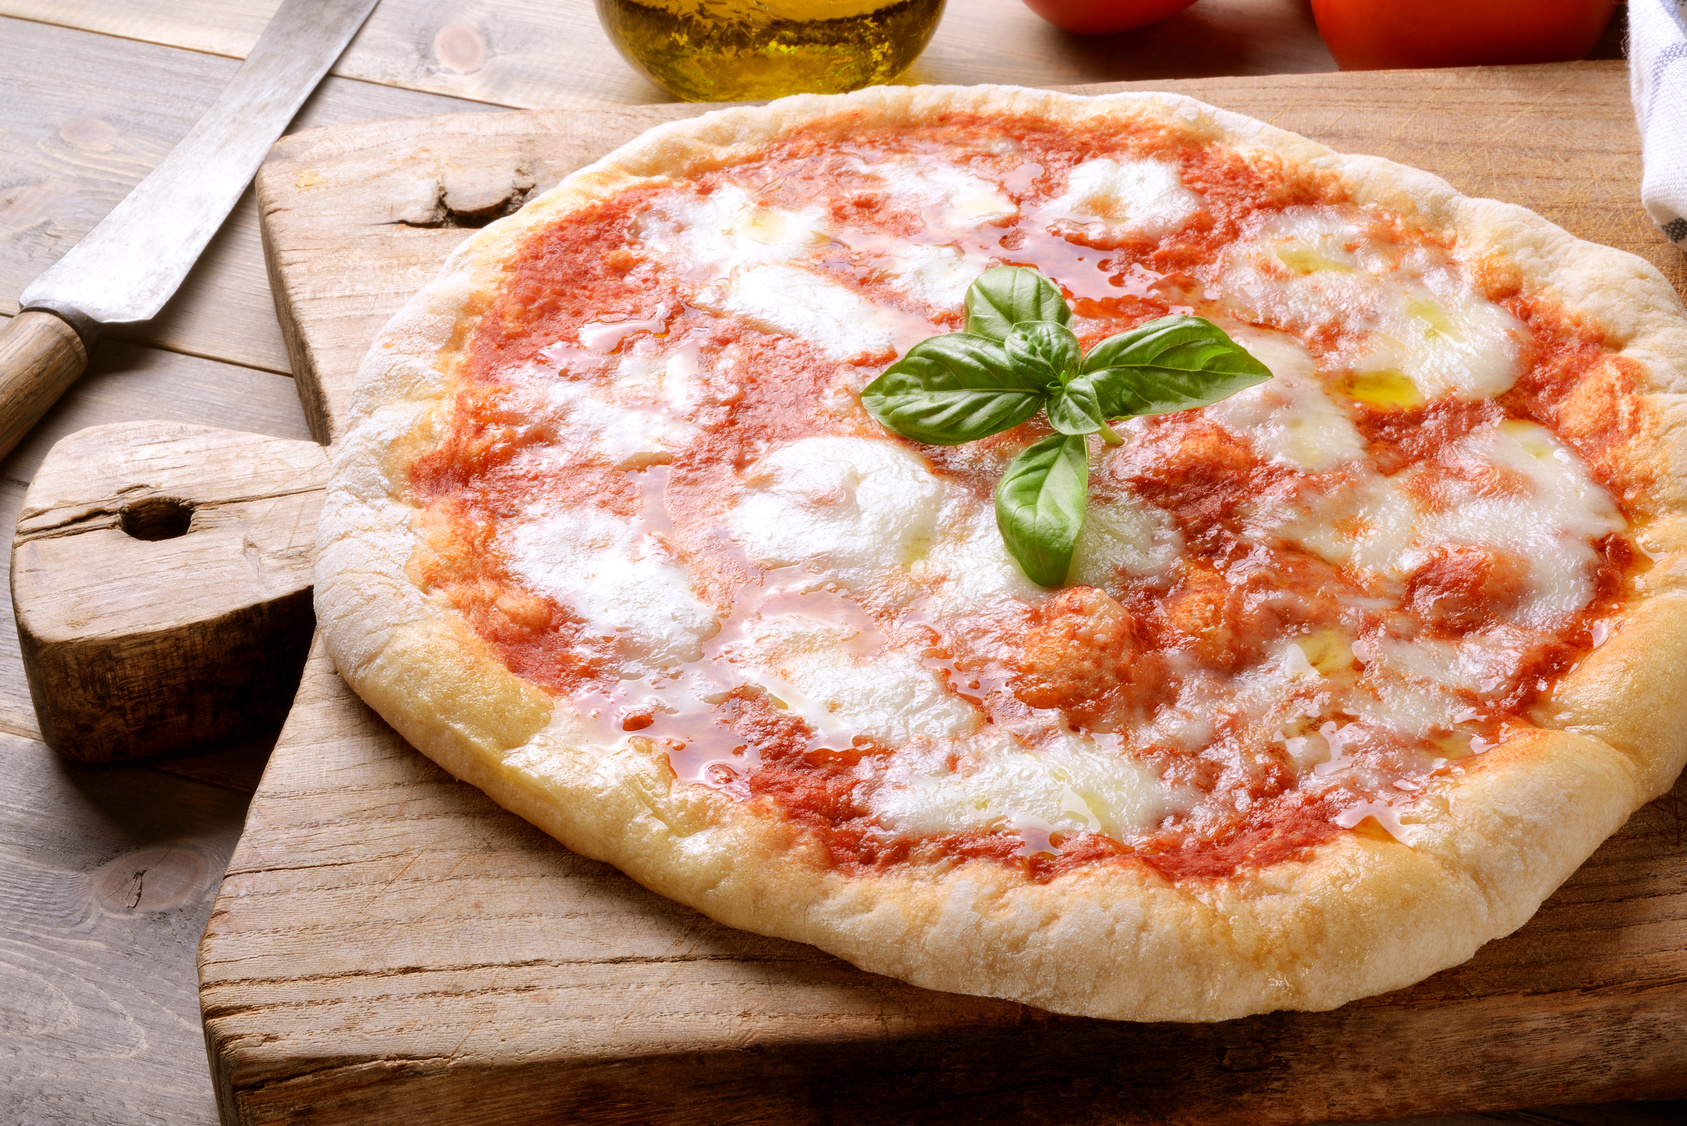 Une pizza margherita bien appétissante. © fabiomax, fotolia